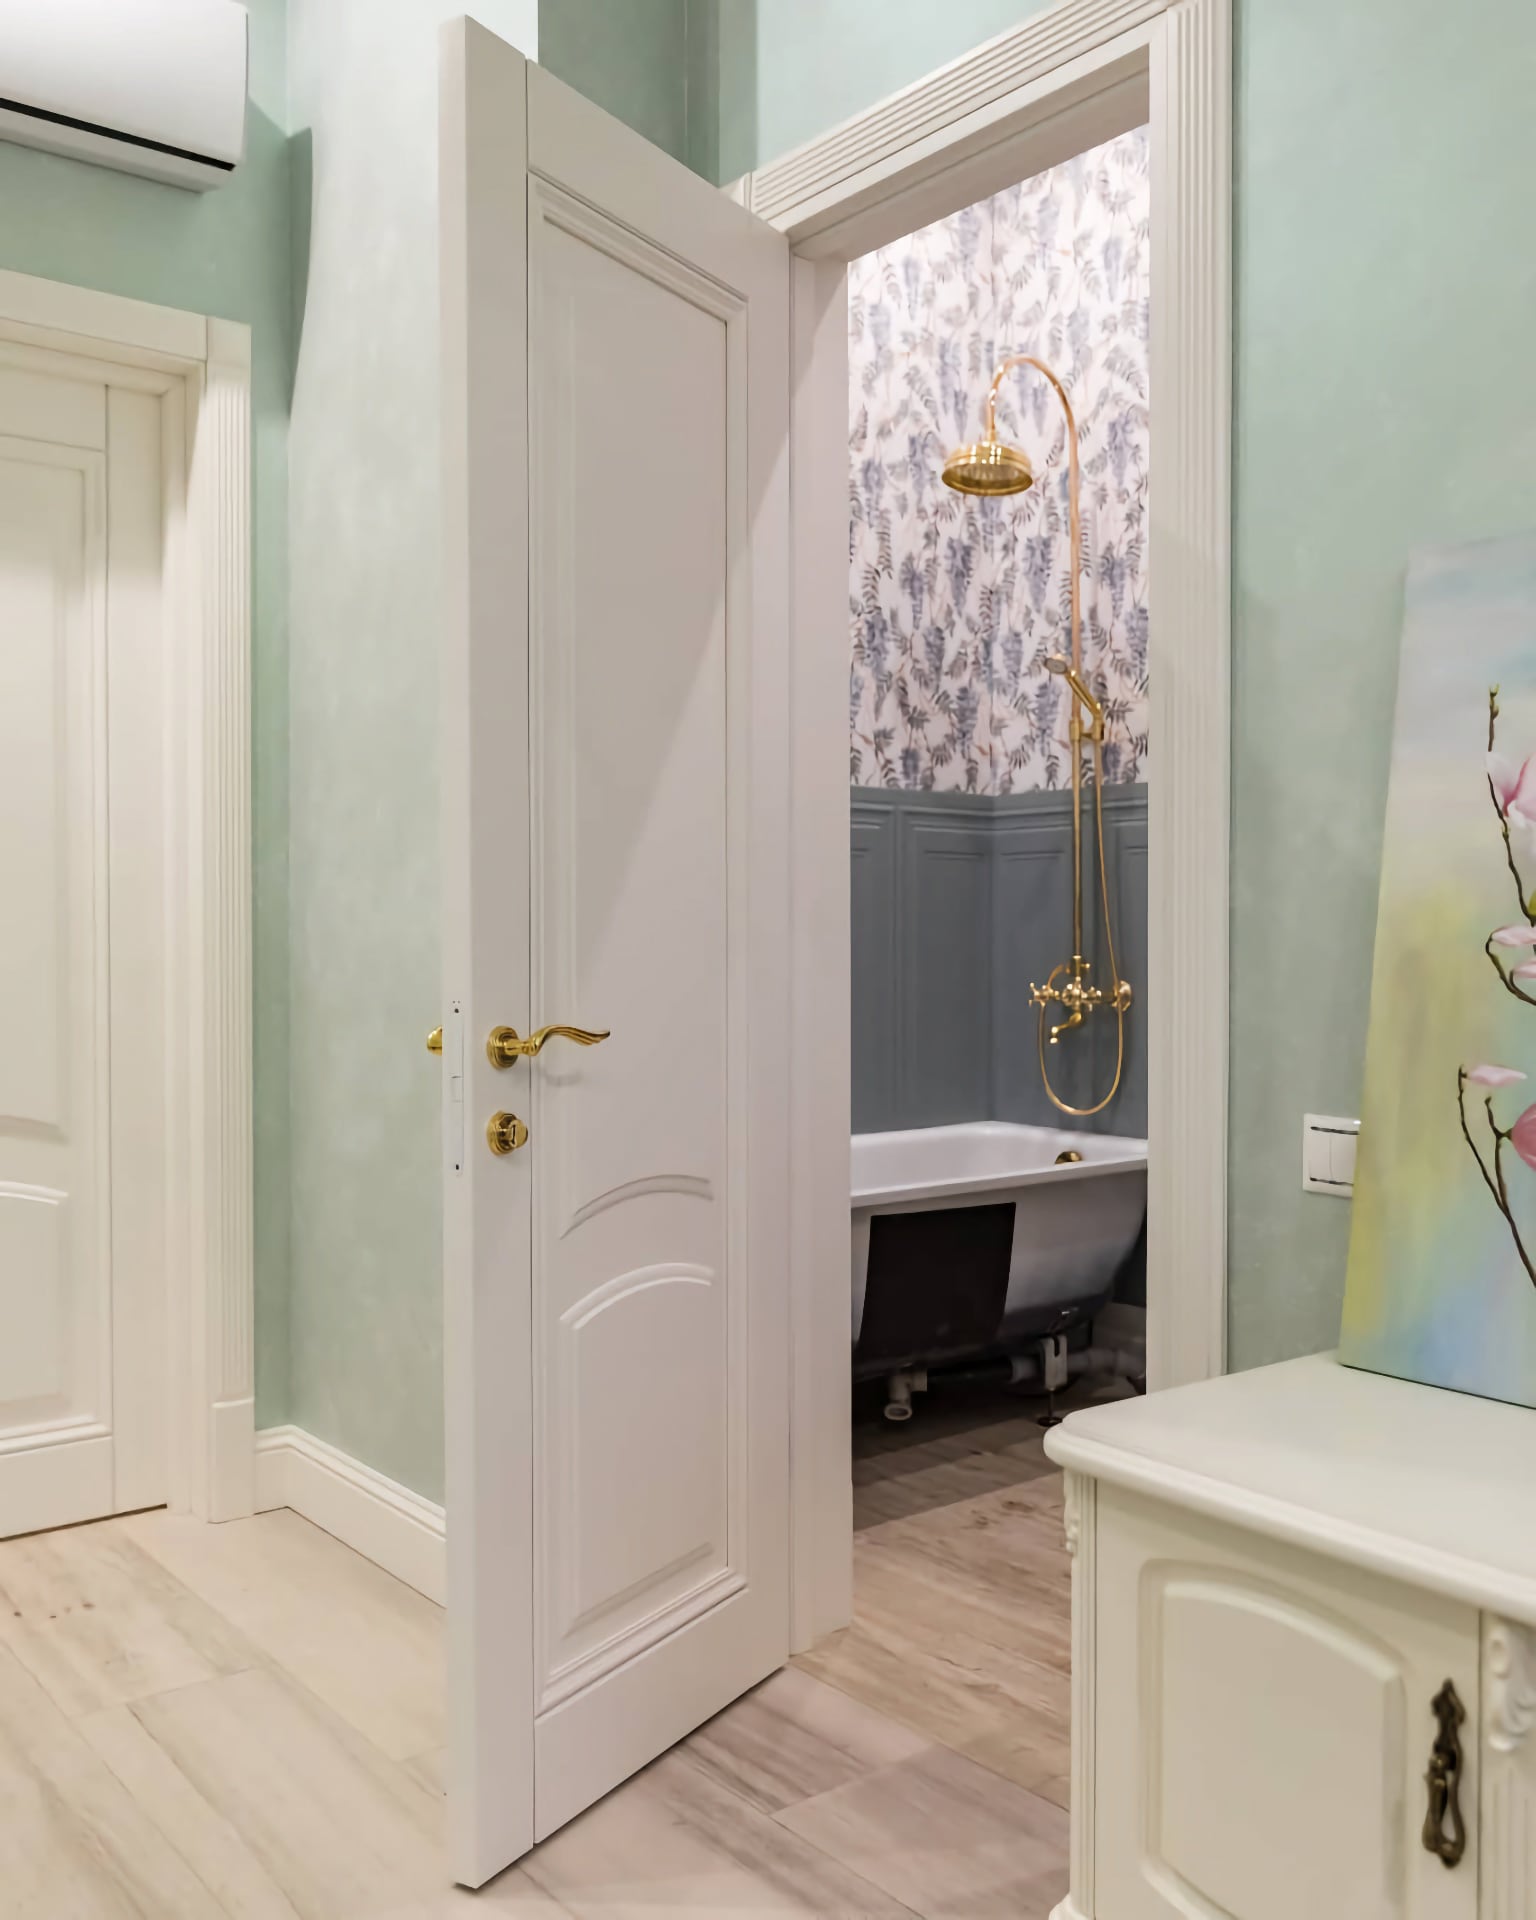 Внутренние двери - элегантная белая дверь в современном интерьере, вход с коридора в ванную